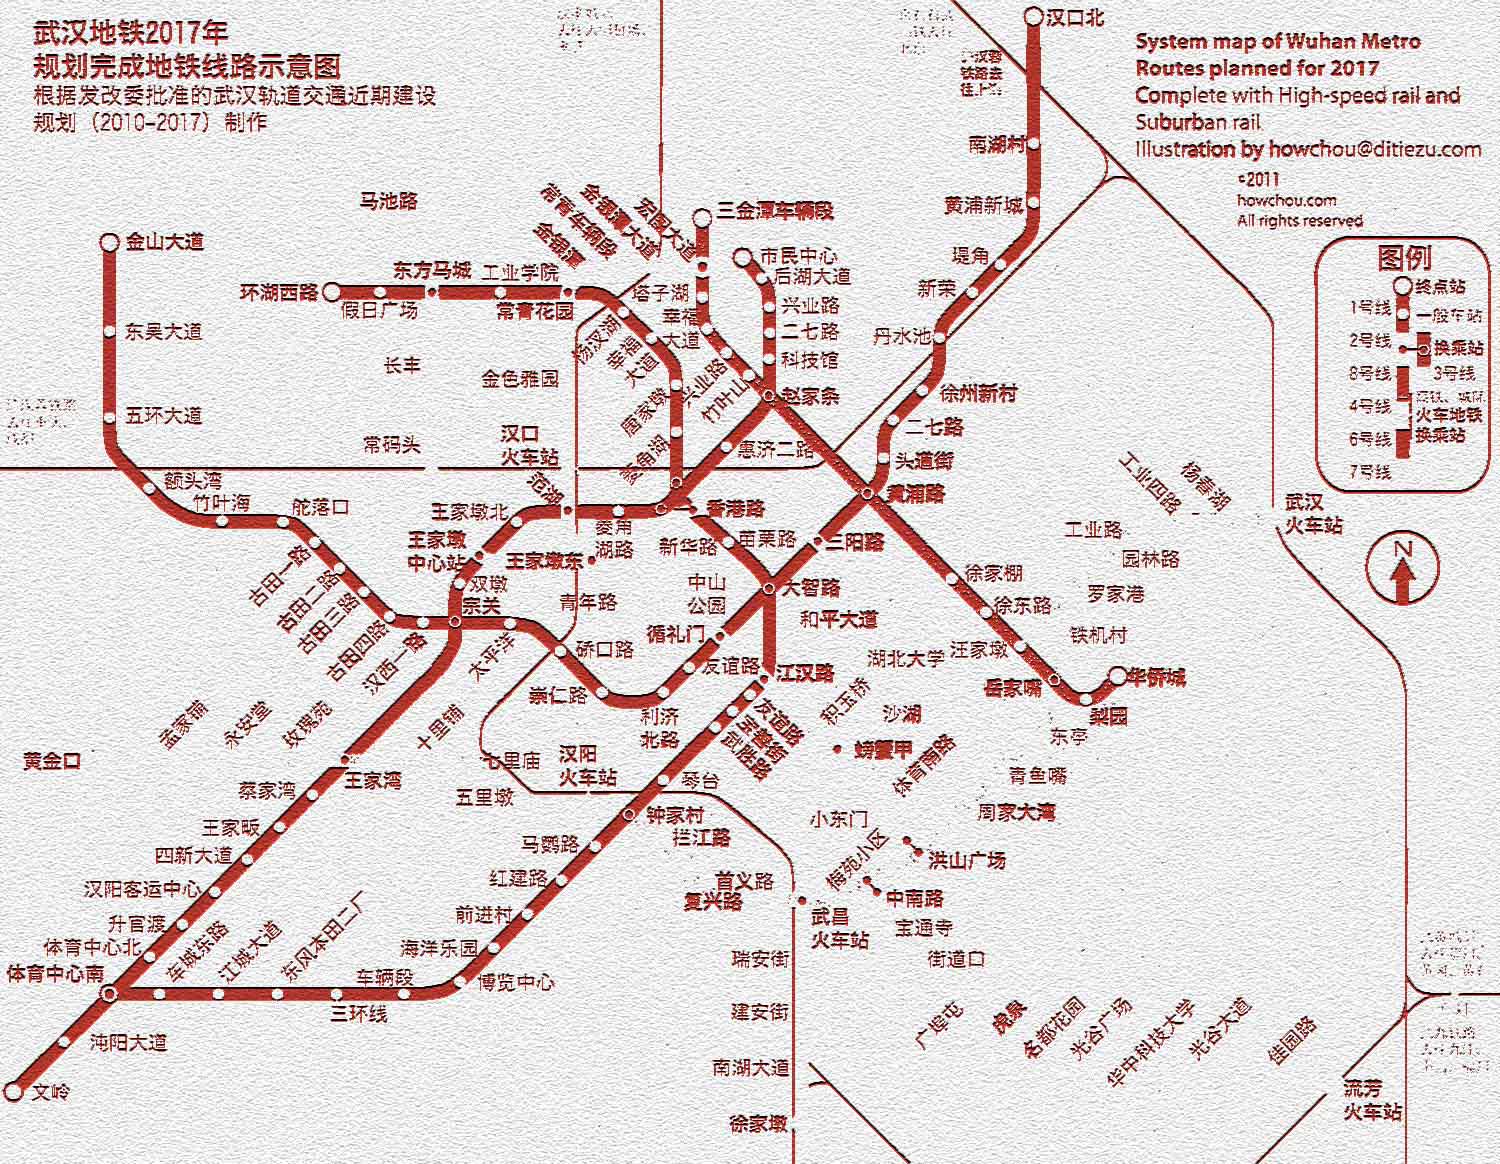 明天到武汉武昌下火车怎么玩?图片